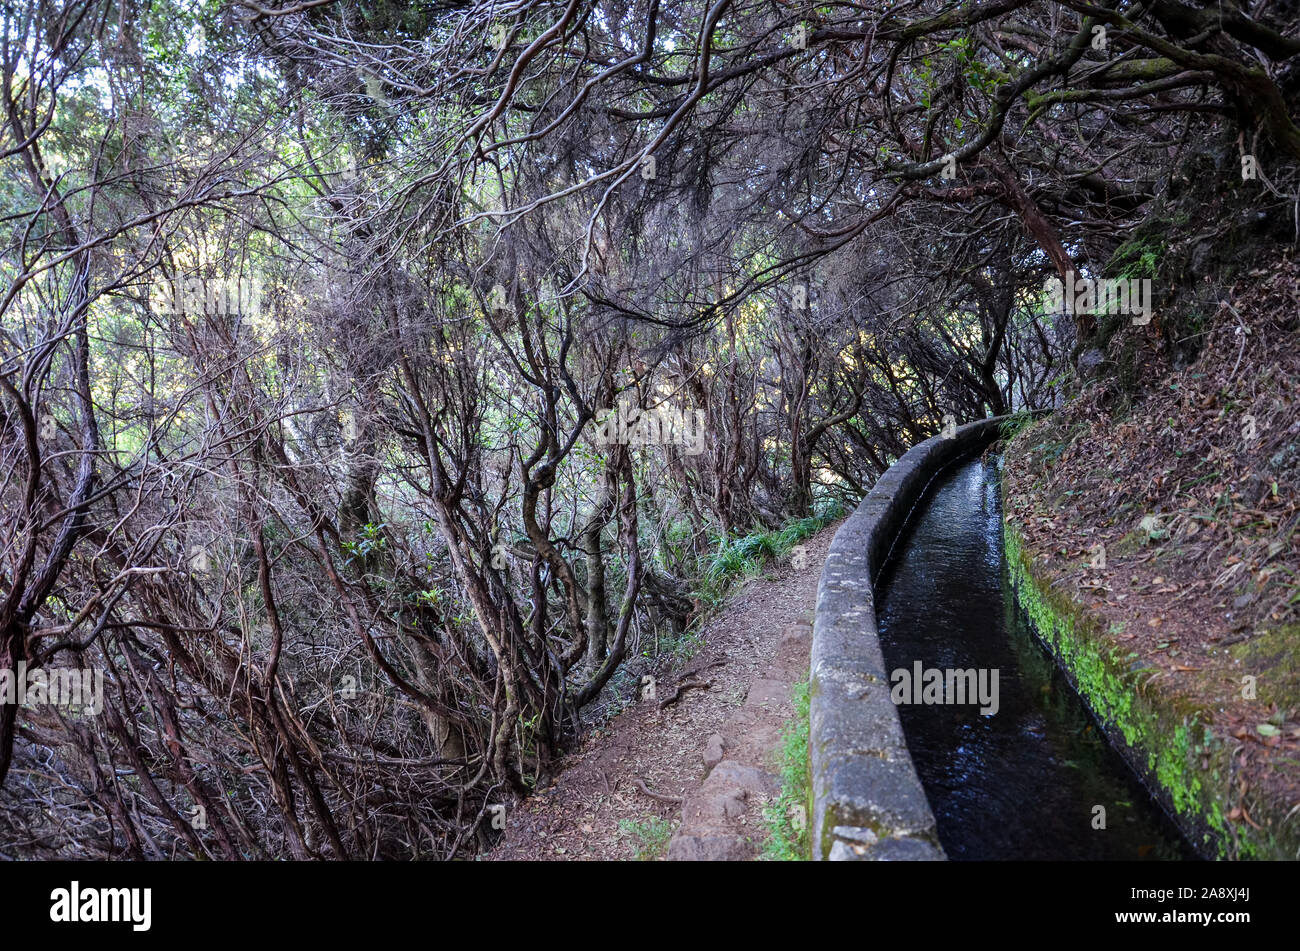 Wanderweg in dunklen Lorbeerwald, Teil der Levada 25 Fontes auf der Insel Madeira, Portugal. Das Bewässerungssystem Canal, schmalen Stein weg, und Lorbeerbäume. Laurissilva, Laurisilva. Madeira Trail. Stockfoto